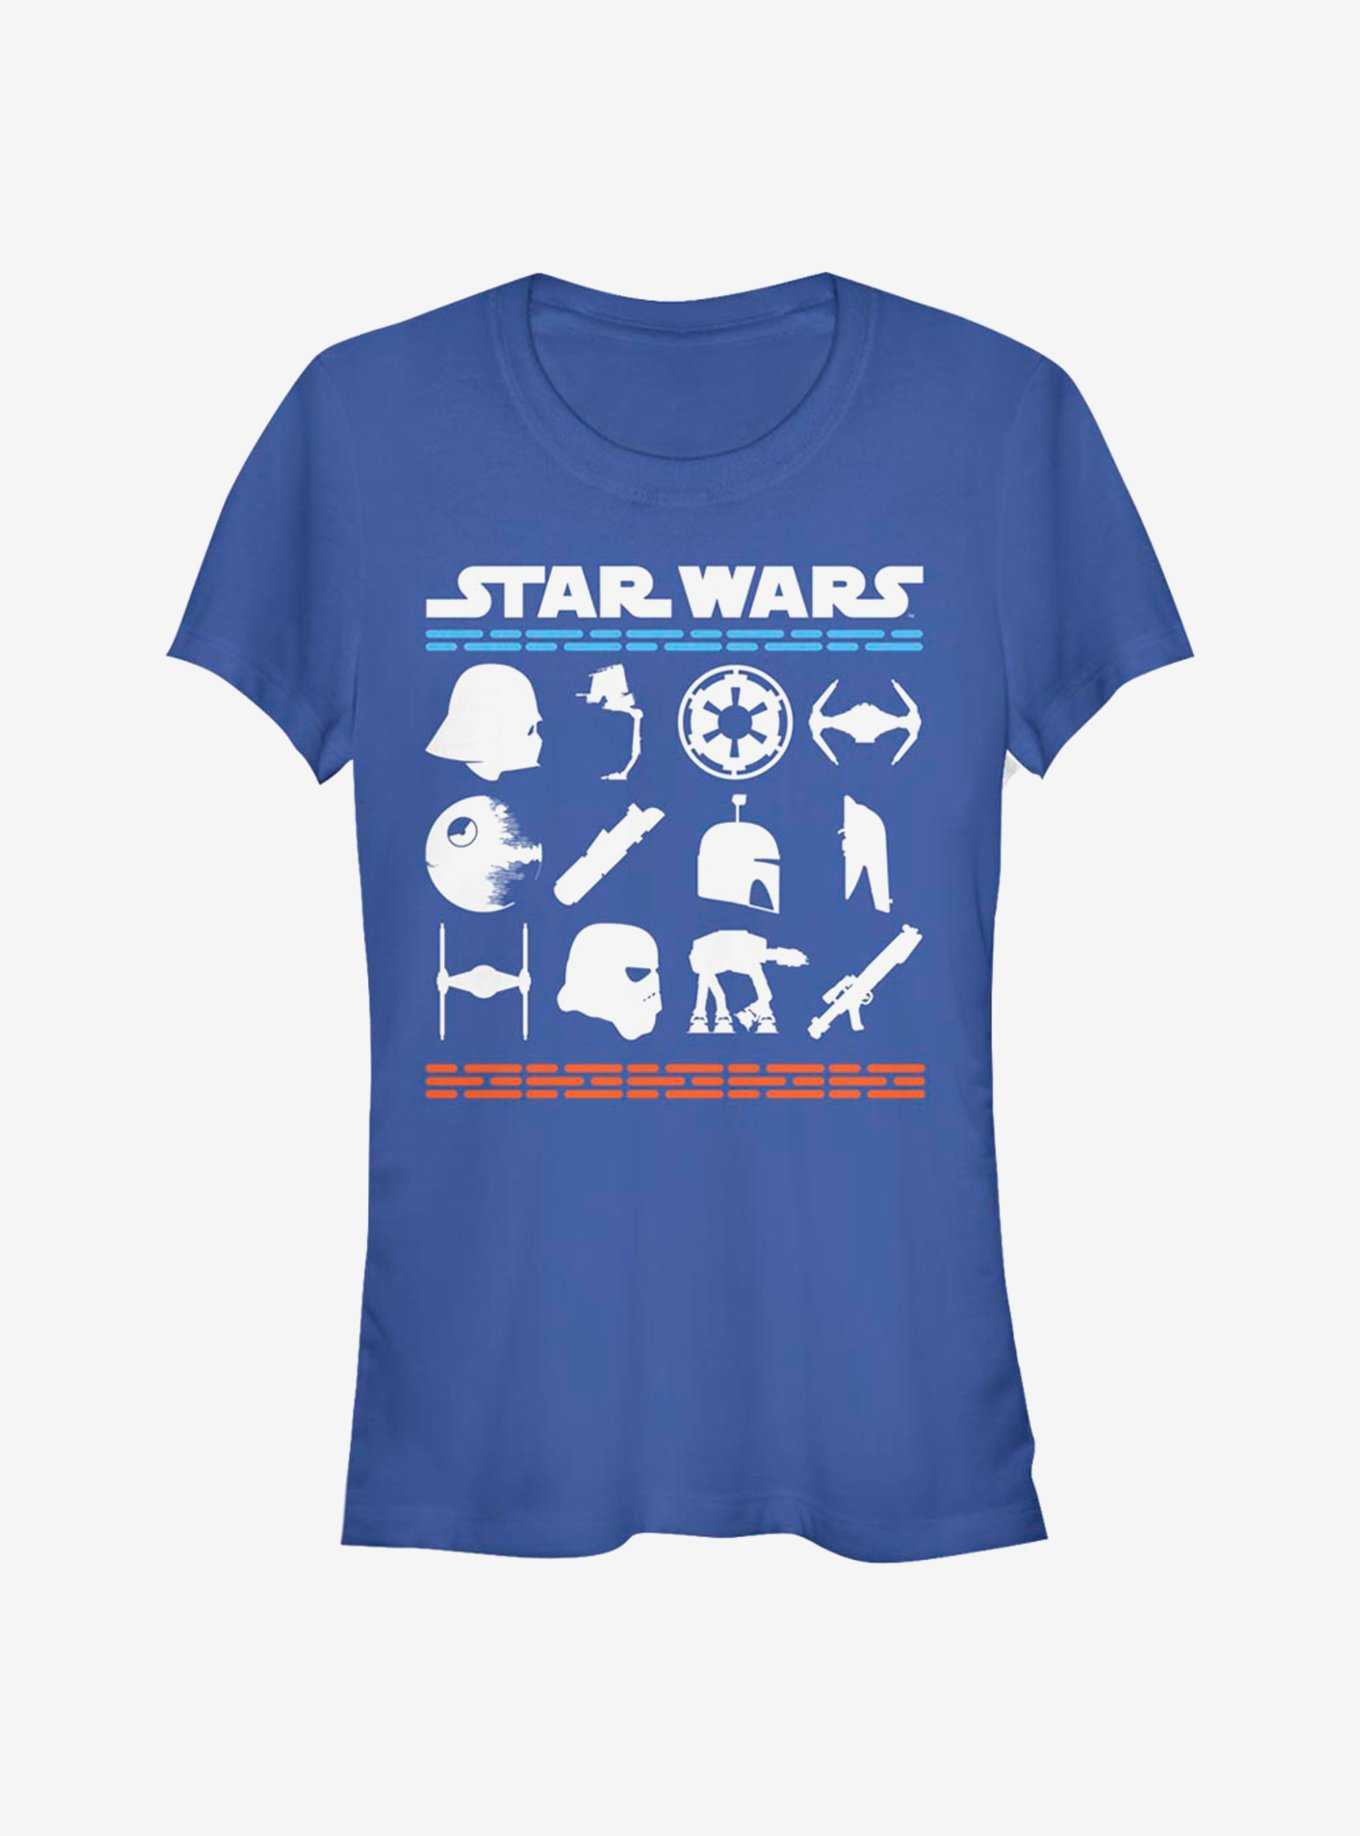 Star Wars Lucas Film Stacked Girls T-Shirt, , hi-res